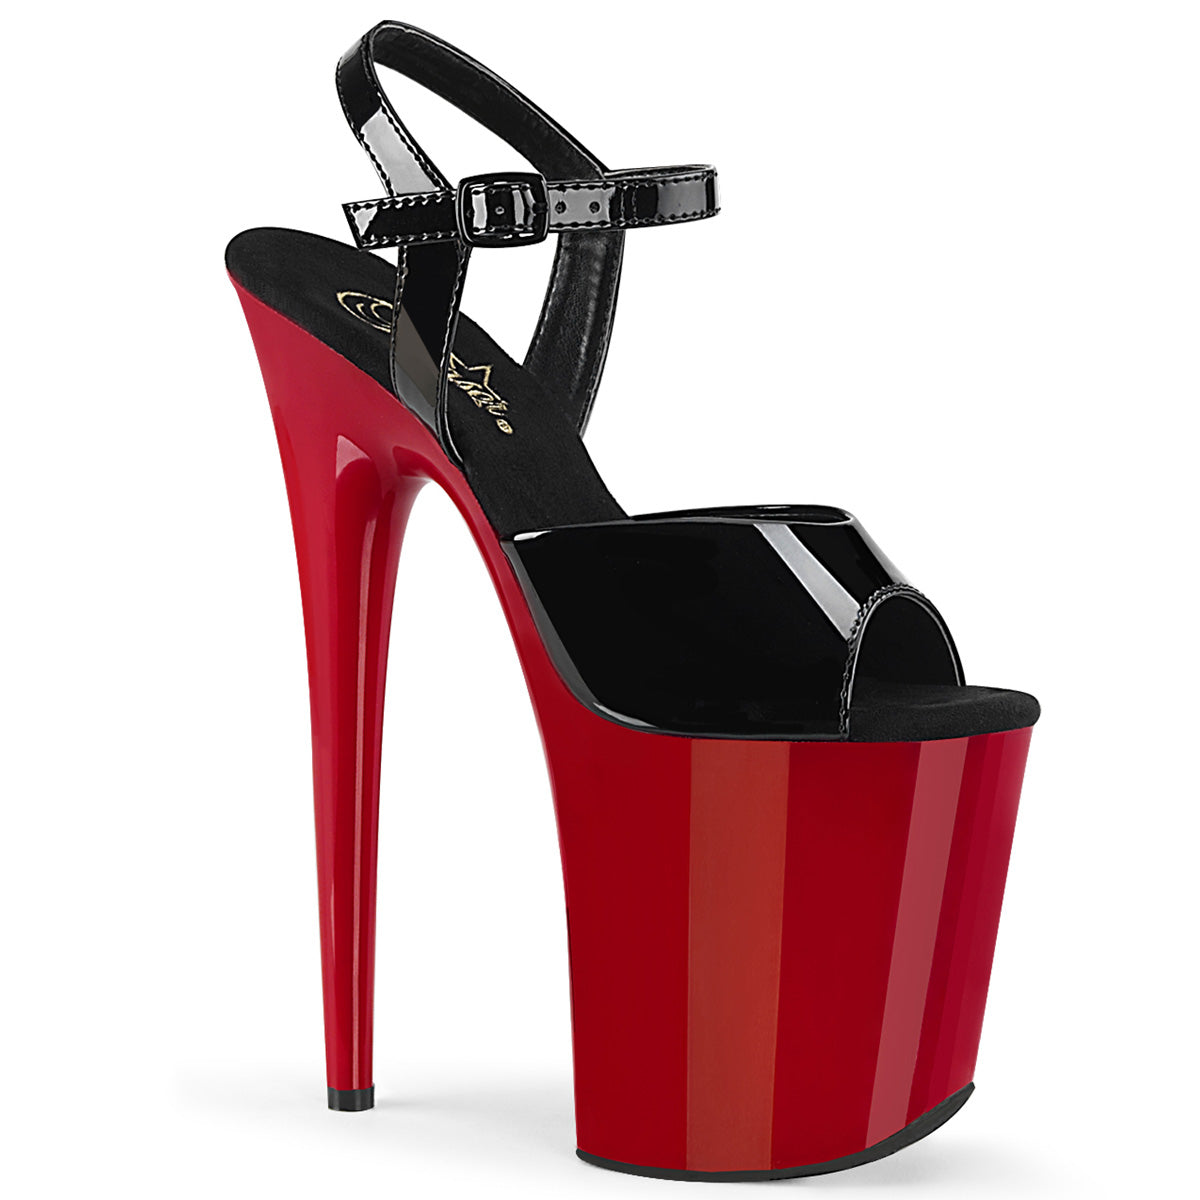 FLAMINGO-809 8" Heel Black Patent Red Pole Dancer Platform Shoes